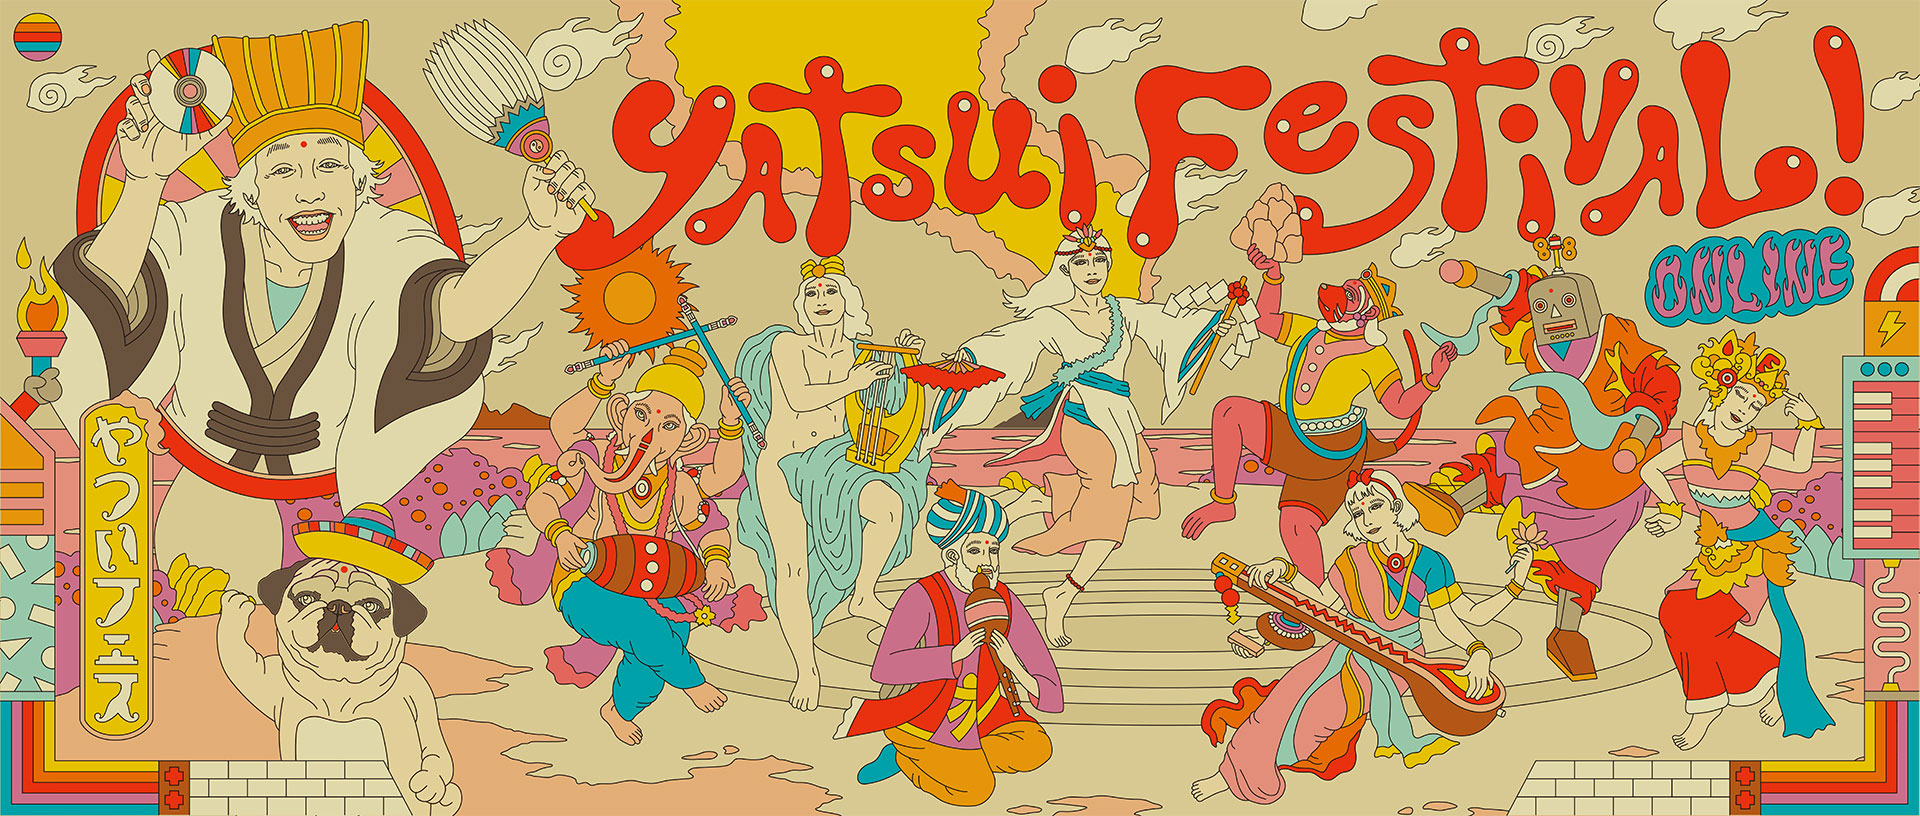 ONLINE YATSUI FESTIVAL! 2020